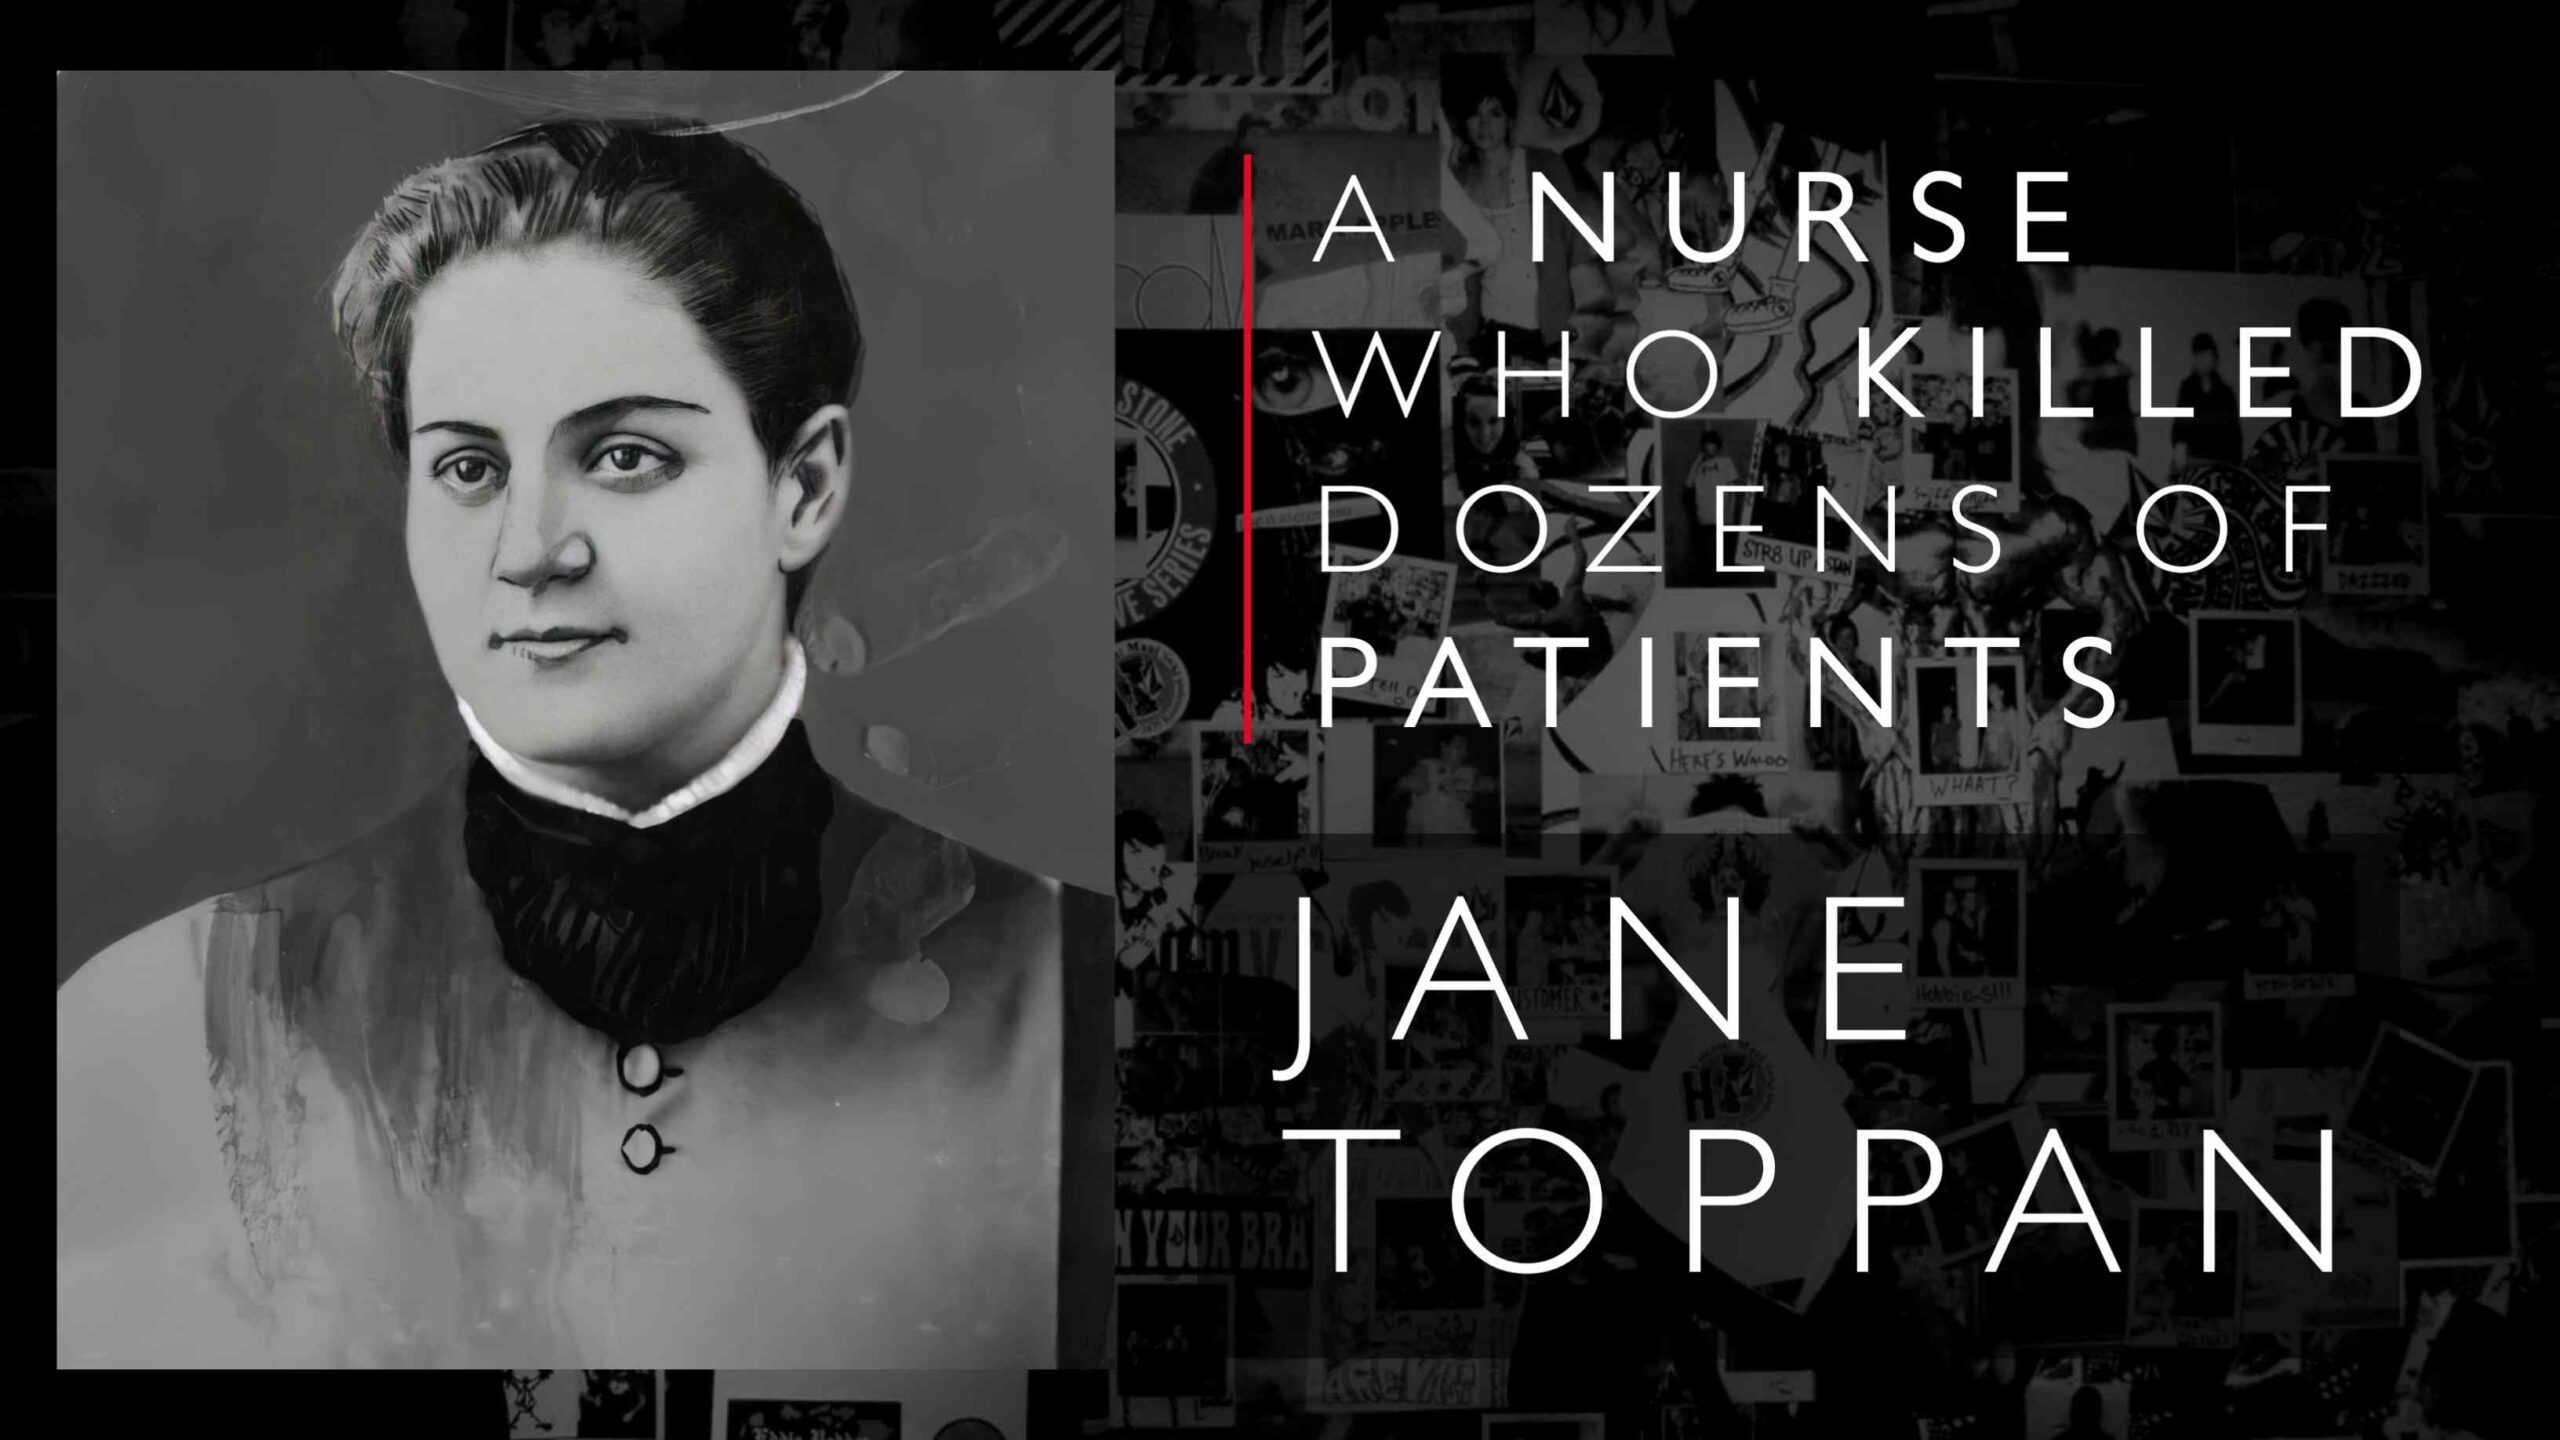 جین توپپان (در 24 سالگی دیده می شود) پرستاری بود که در سال 1885 با بیماران و دوستانش قتل عام کرد و تا پایان سال 30 تاکنون 1901 قربانی گرفت.